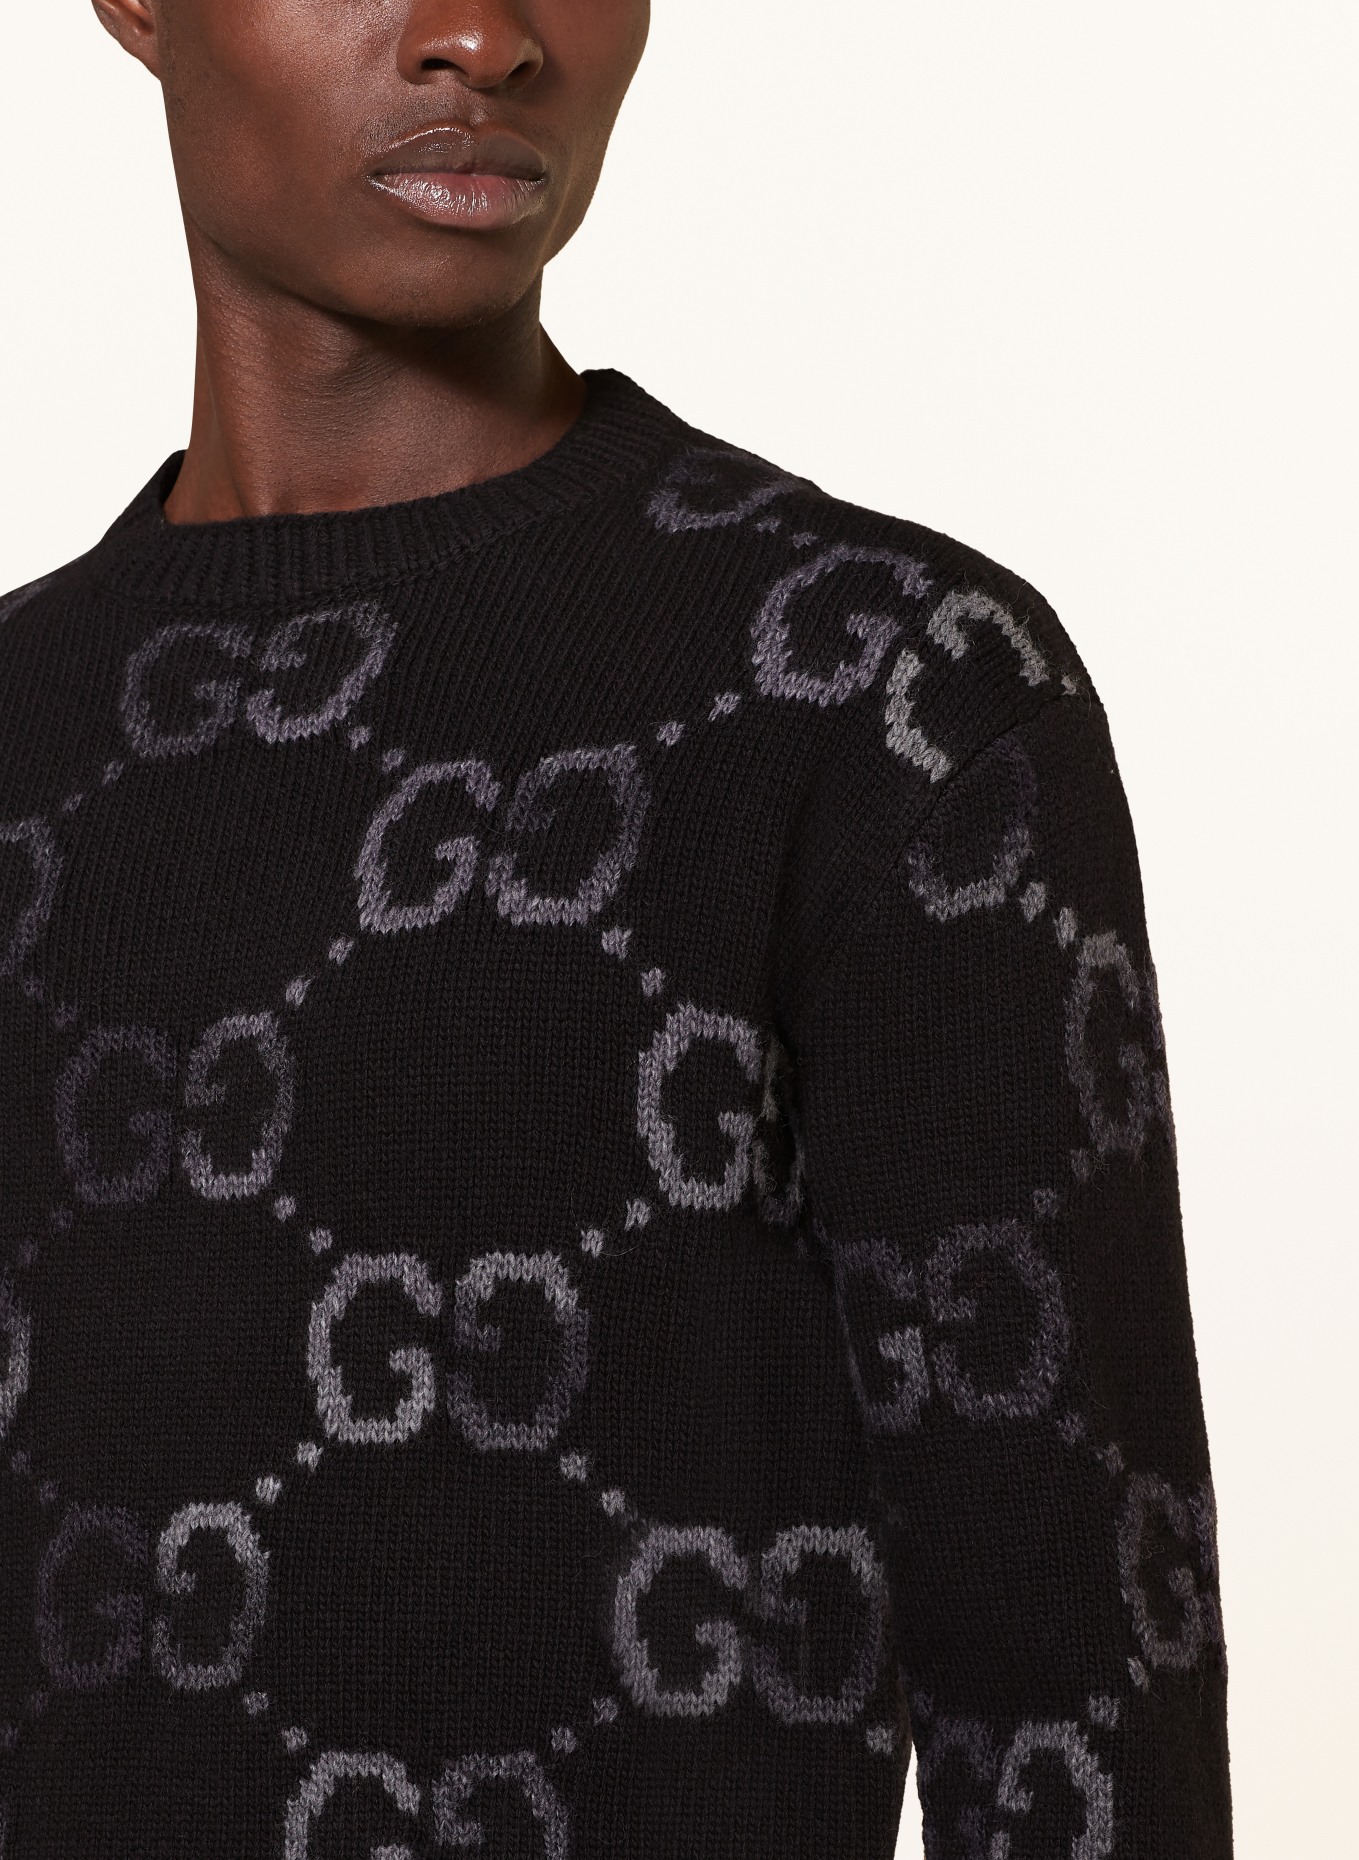 GUCCI Sweater, Color: BLACK/ DARK GRAY (Image 4)